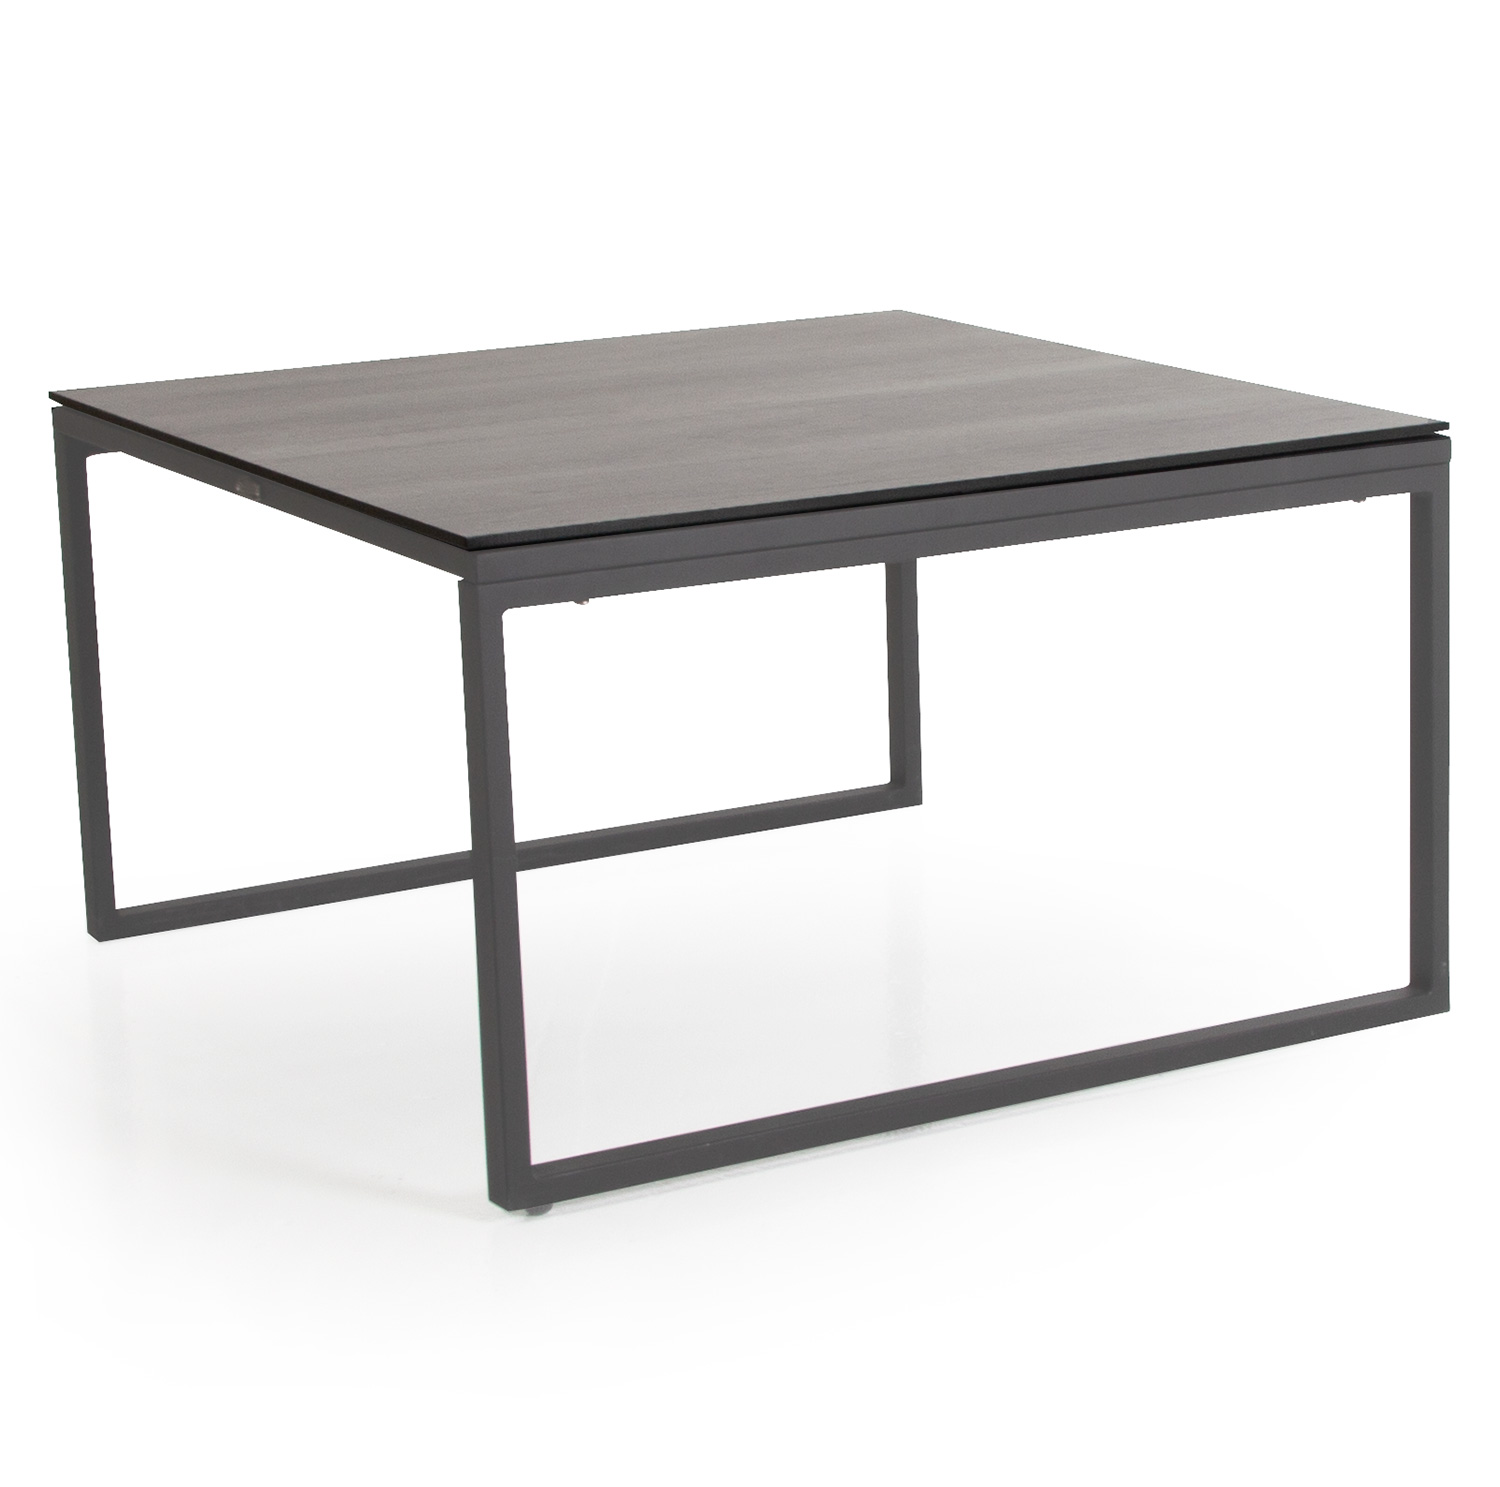 Talance stort soffbord med antracitfärgat stativ och grå laminatskiva.